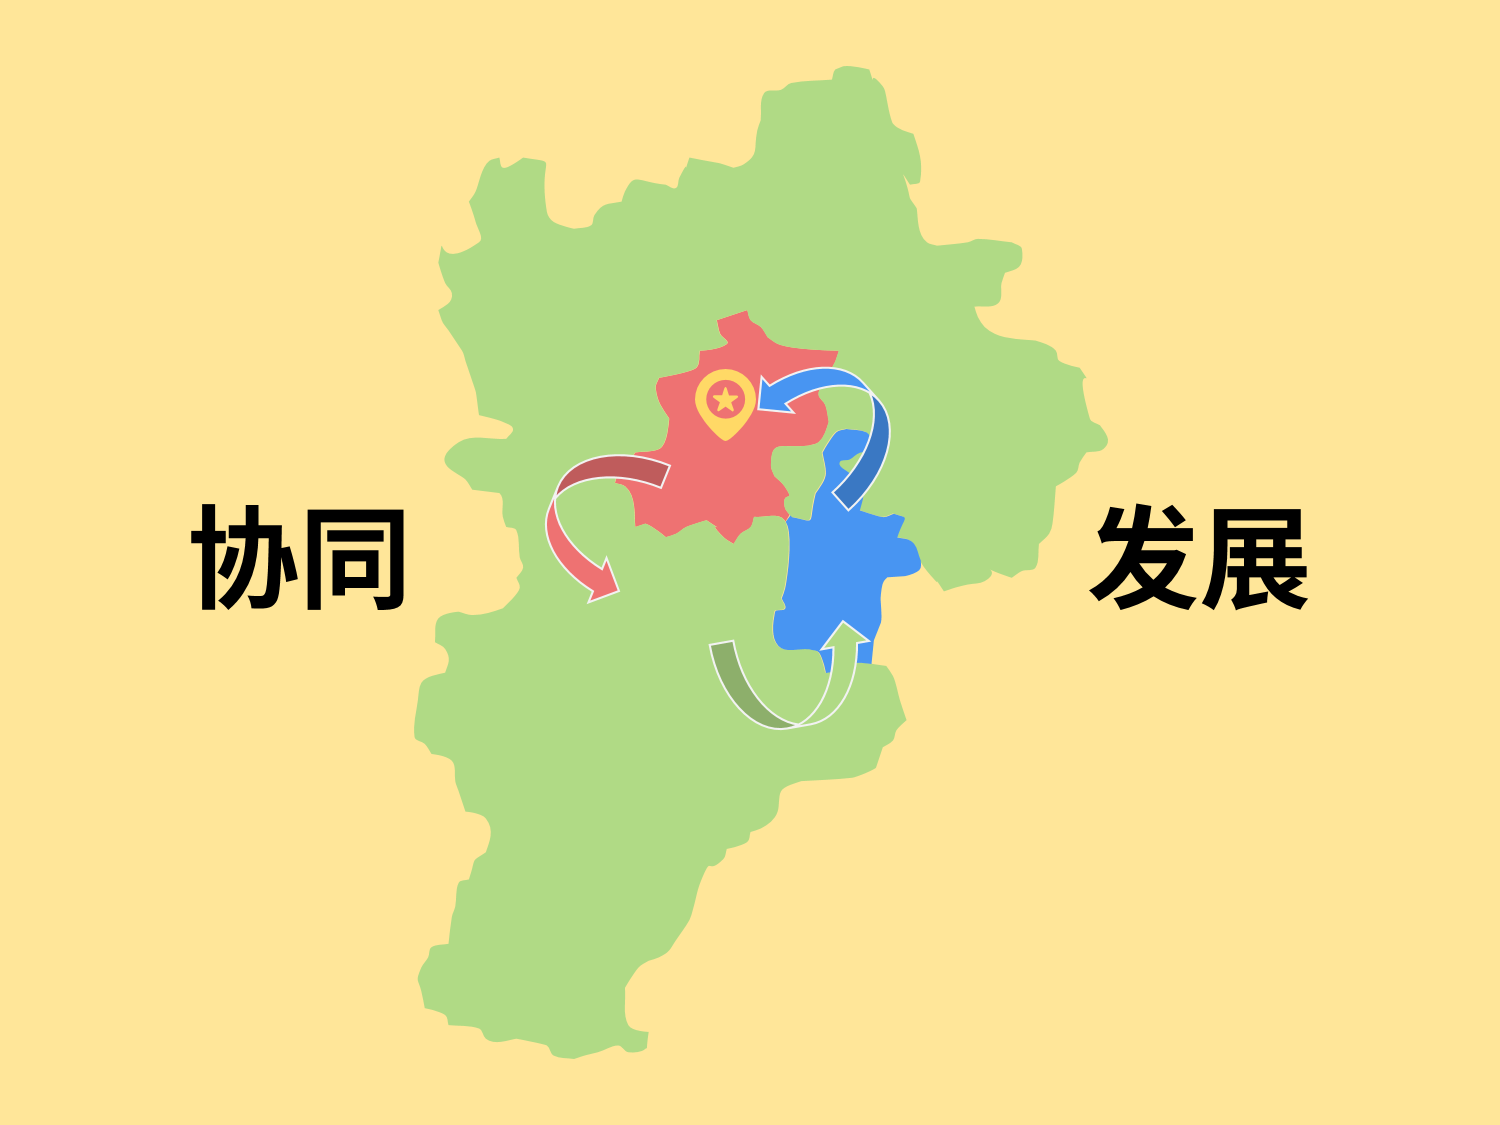 Beijing’s Role in Promoting the Coordinated Development of Beijing-Tianjin-Hebei Region